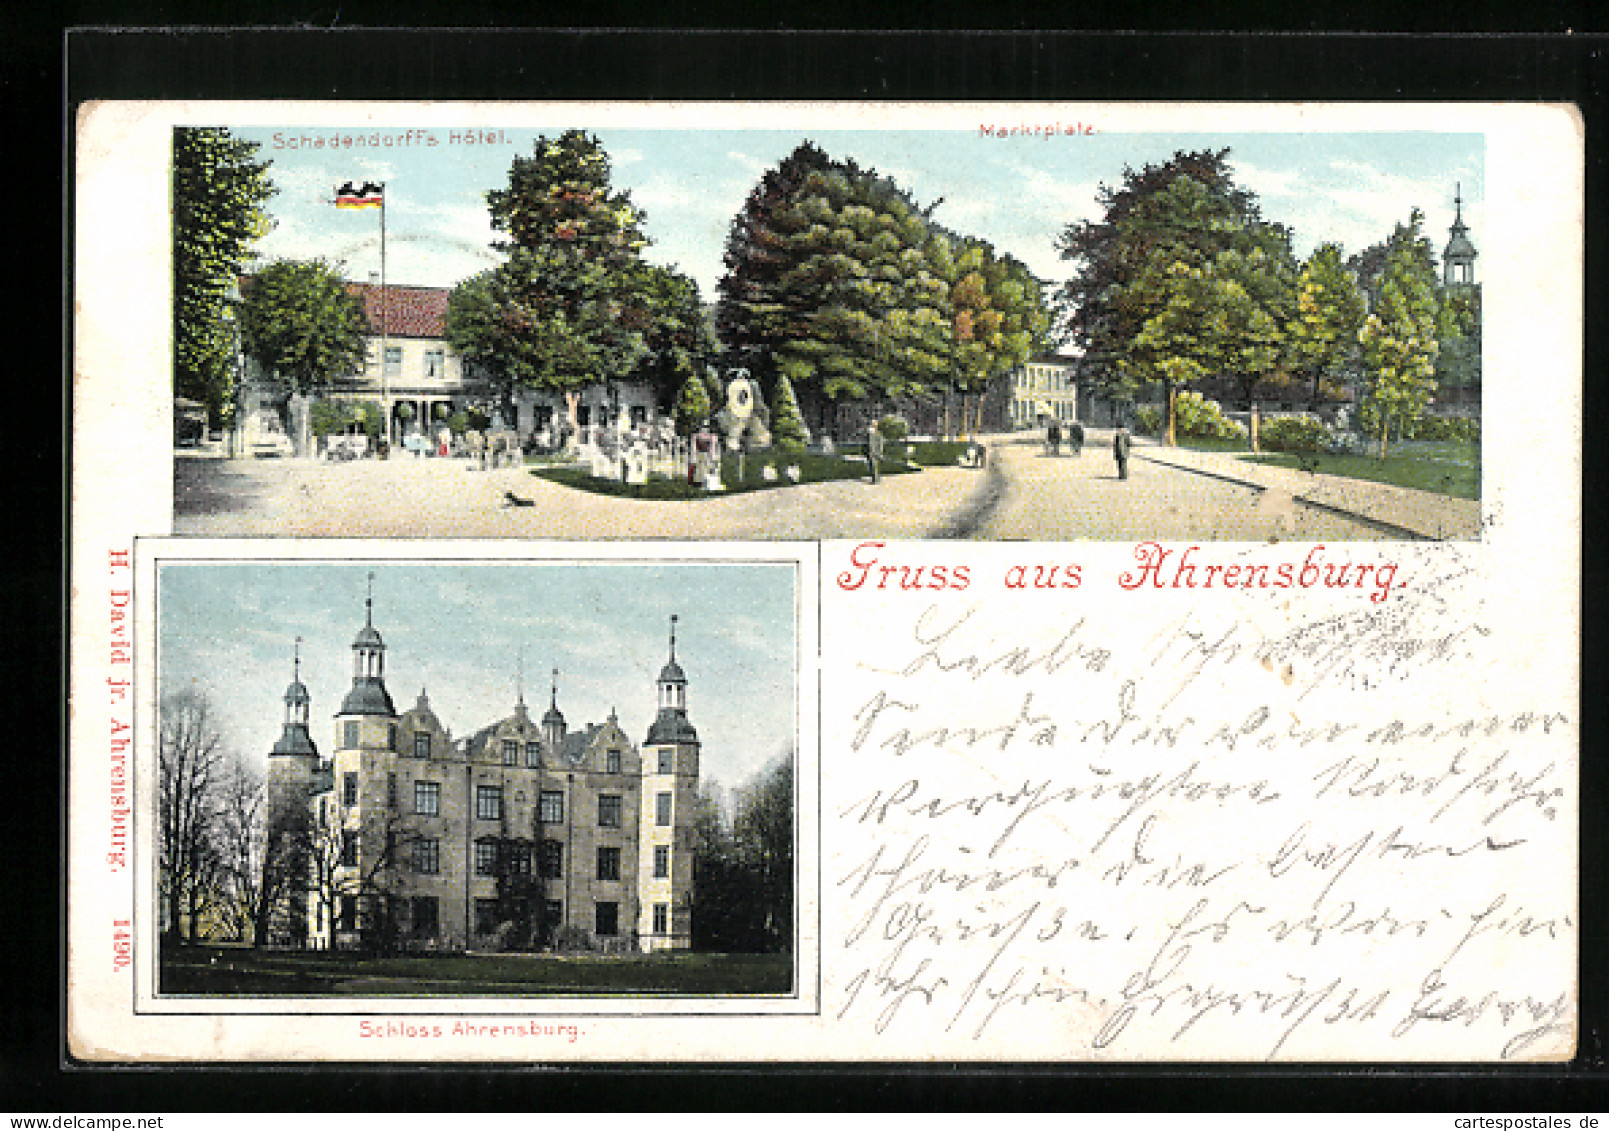 Lithographie Ahrensburg, Schadendorff`s Hotel, Schloss Ahrensburg  - Ahrensburg